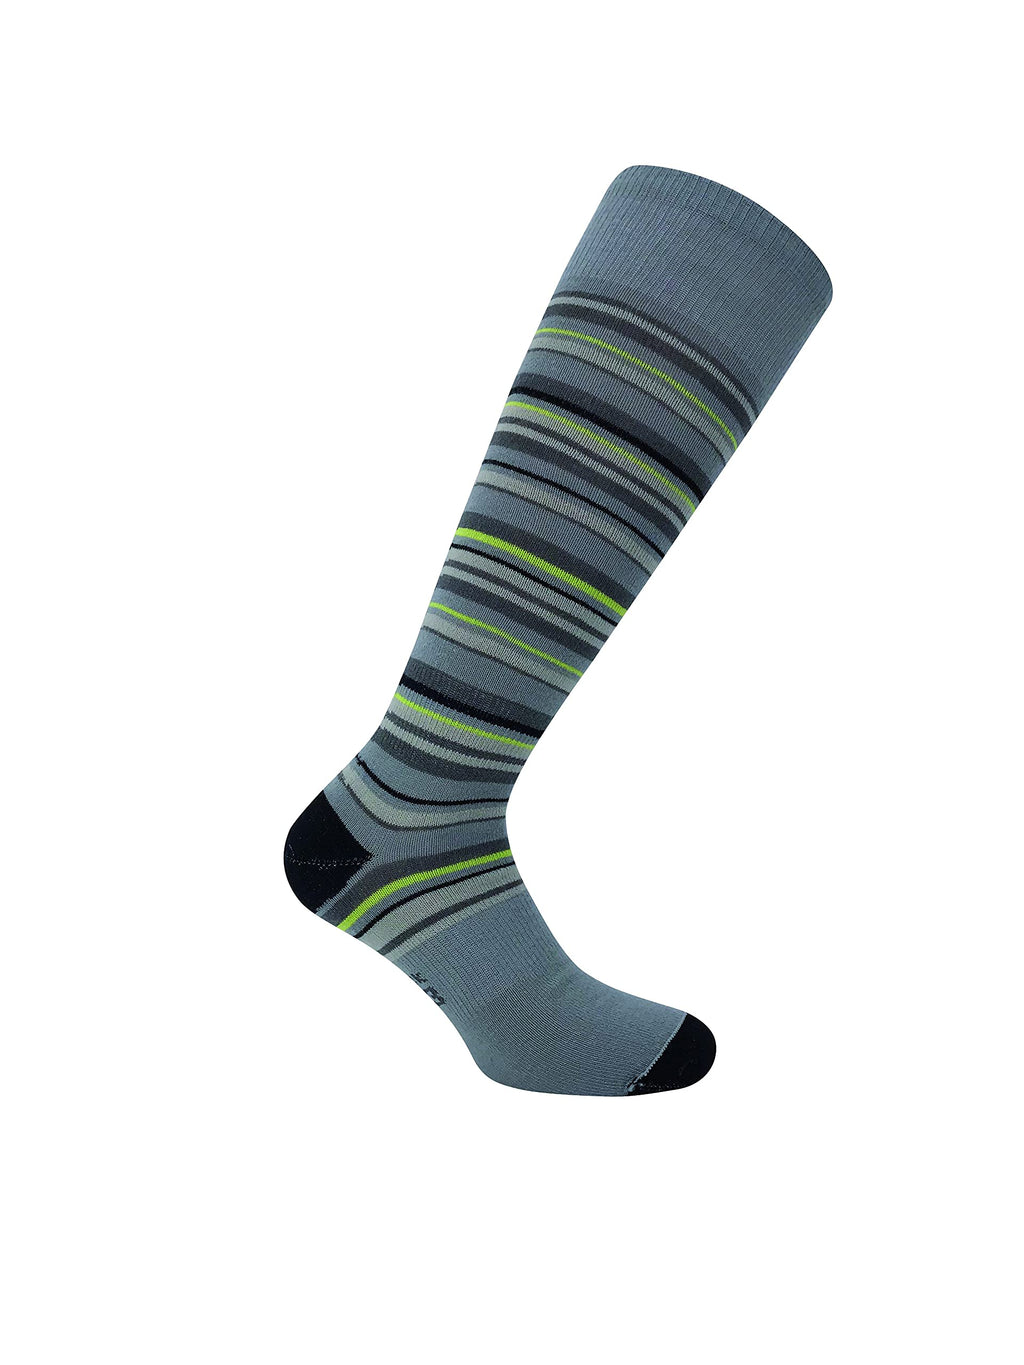 Eurosock unisex-adult Wool Superlite Ski Socks Grey Stripes Small - BeesActive Australia